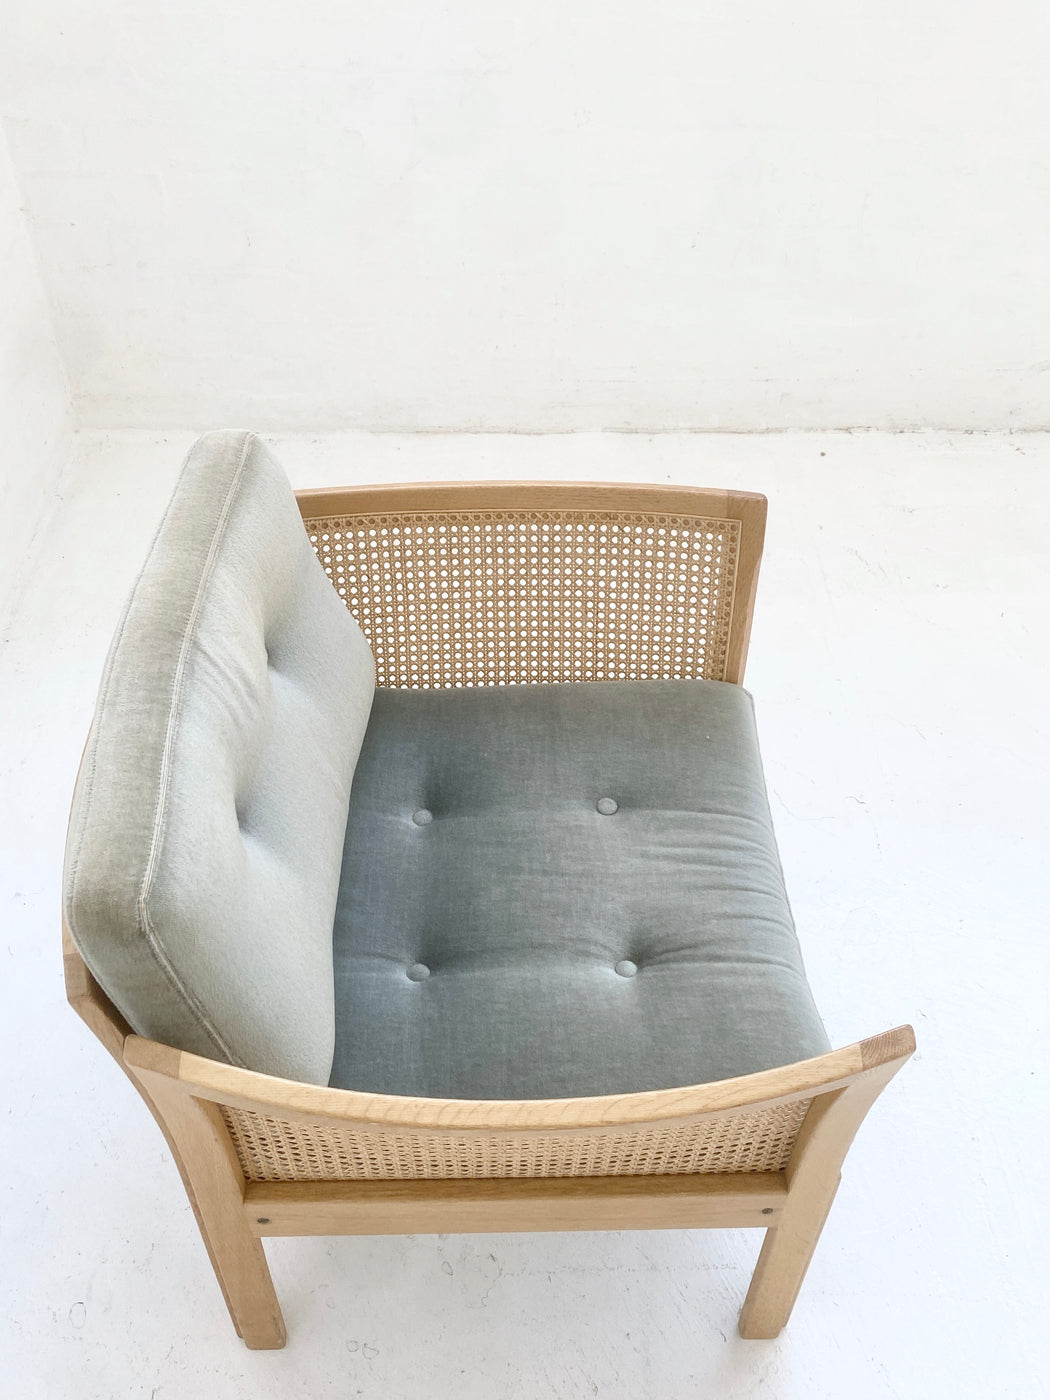 Illum Wikkelsø 'Plexus' Lounge Chair